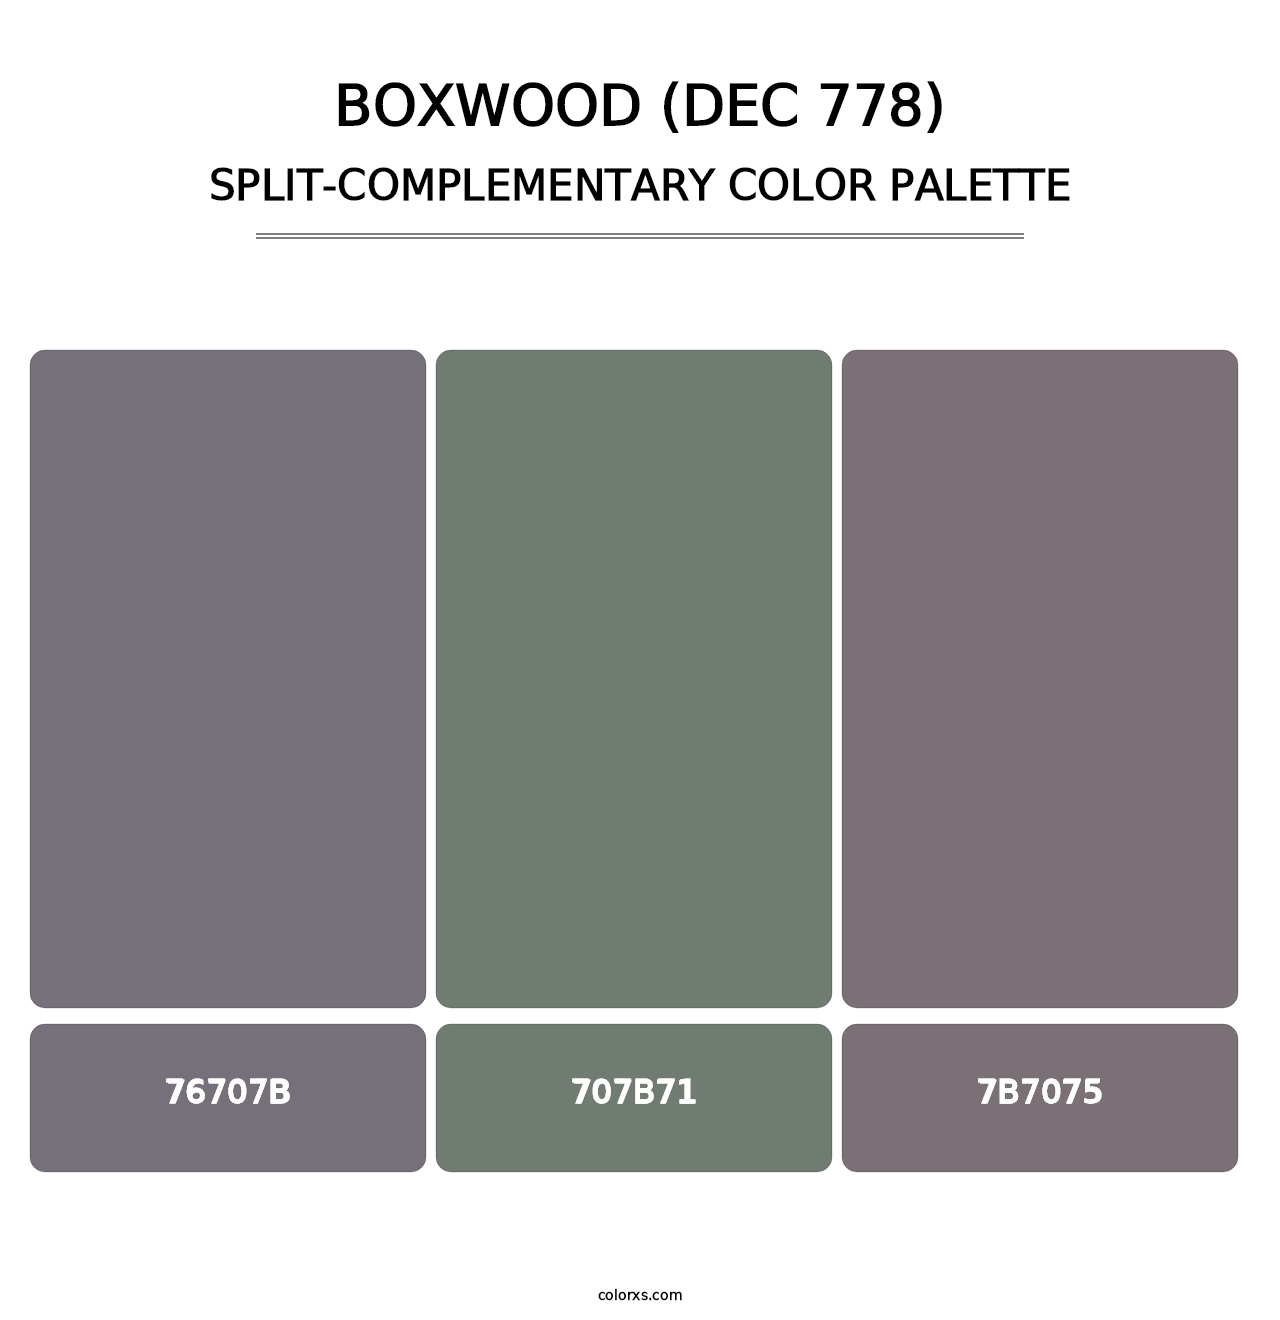 Boxwood (DEC 778) - Split-Complementary Color Palette